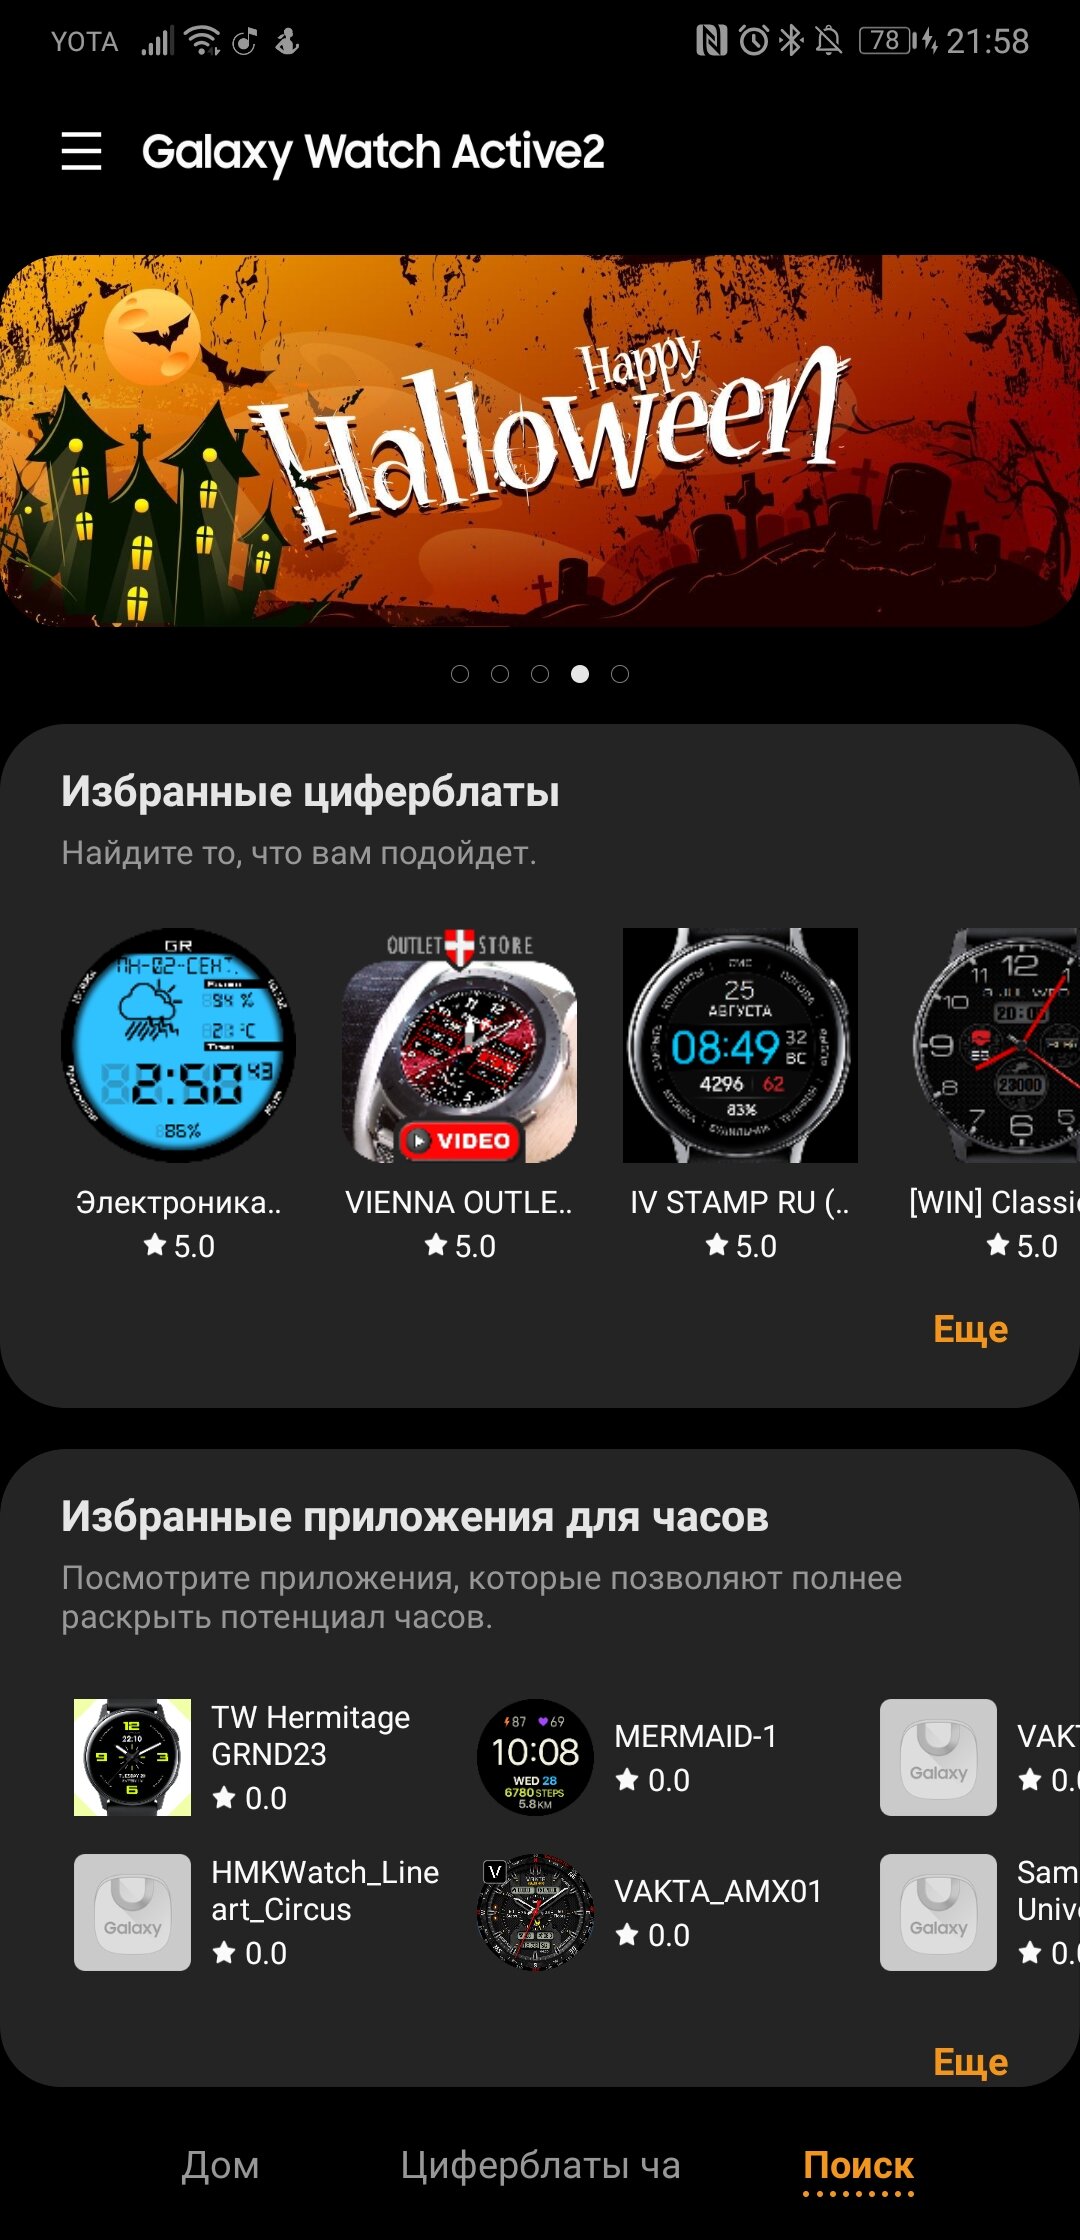 Программа для galaxy watch. Лучшие приложения для Galaxy watch. Приложение к часам Samsung Galaxy. Часы самсунг Galaxy приложение. Приложение для часов Samsung.